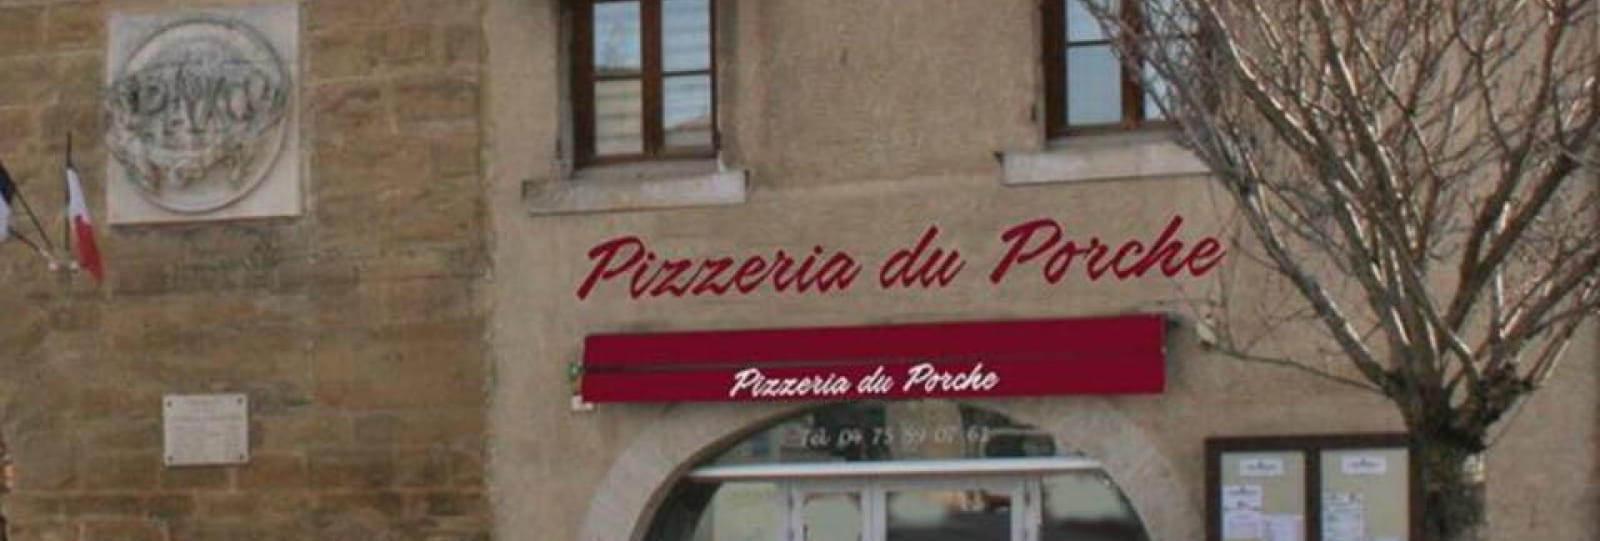 Pizzeria du Porche